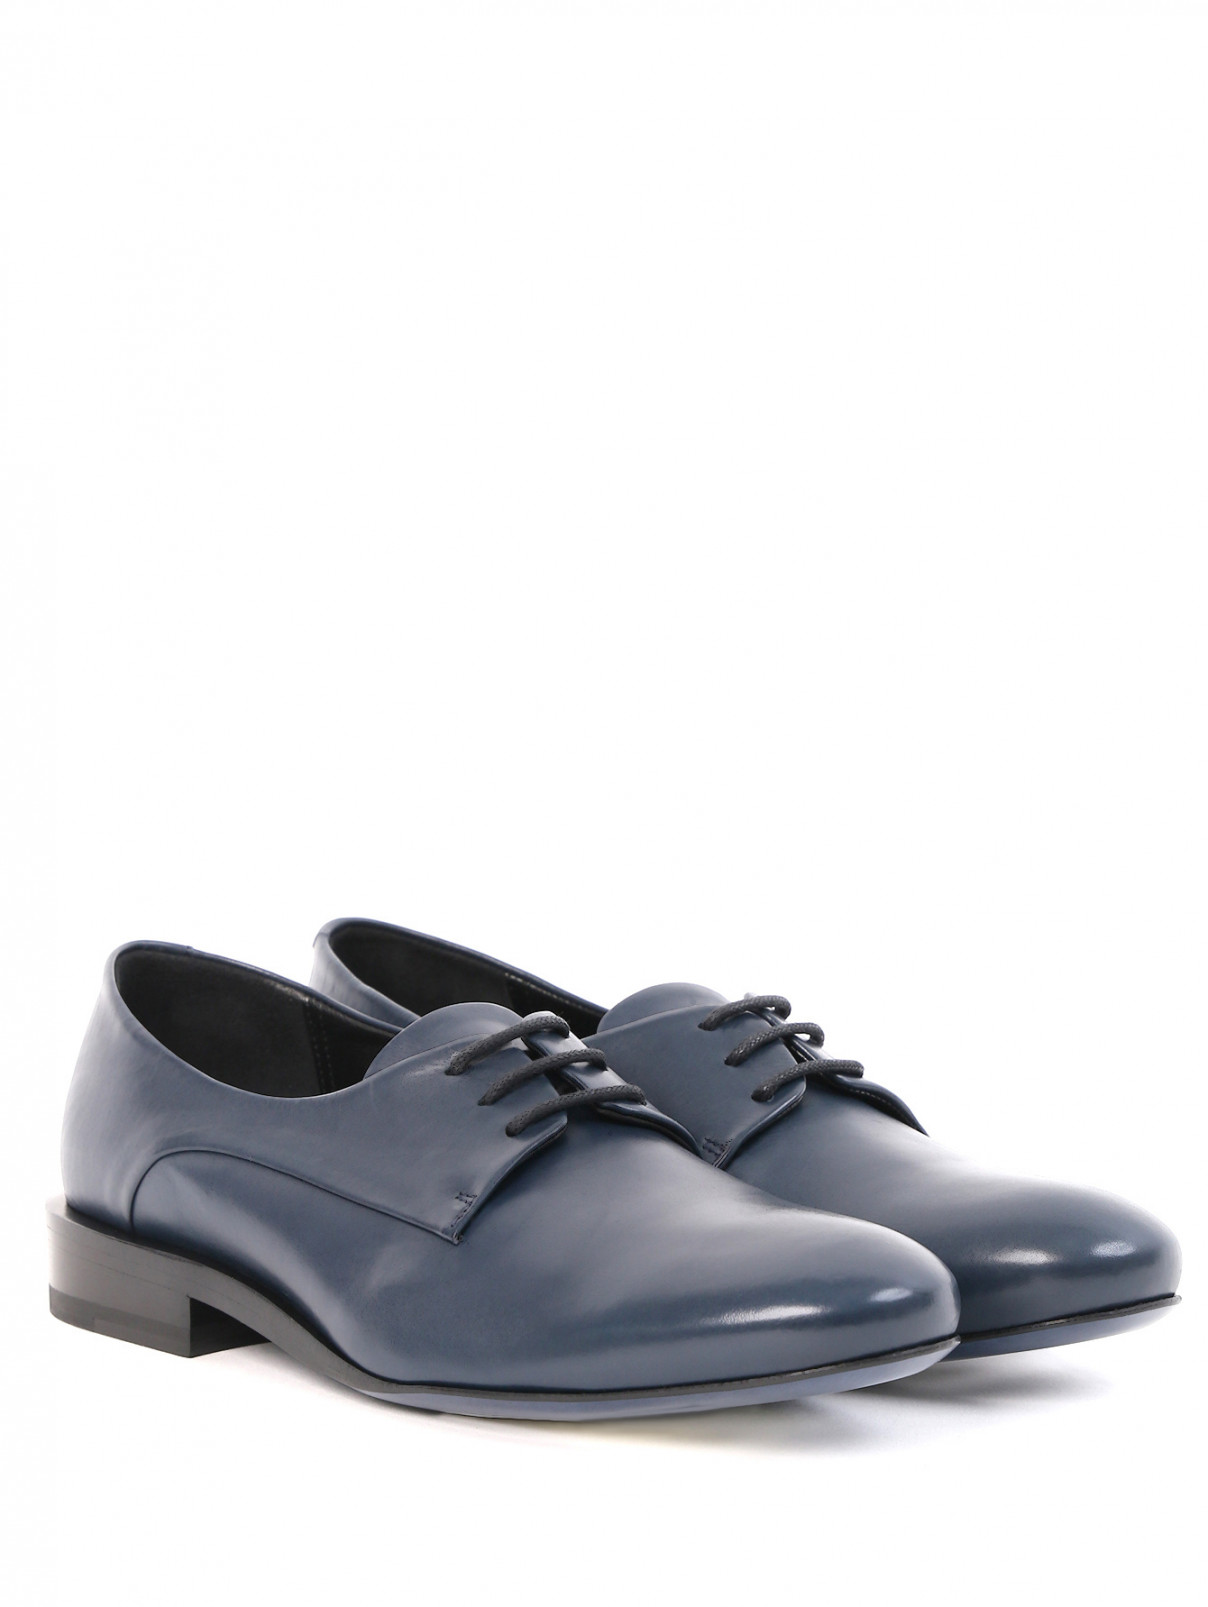 Низкие ботинки из кожи на шнуровке Jil Sander  –  Общий вид  – Цвет:  Синий